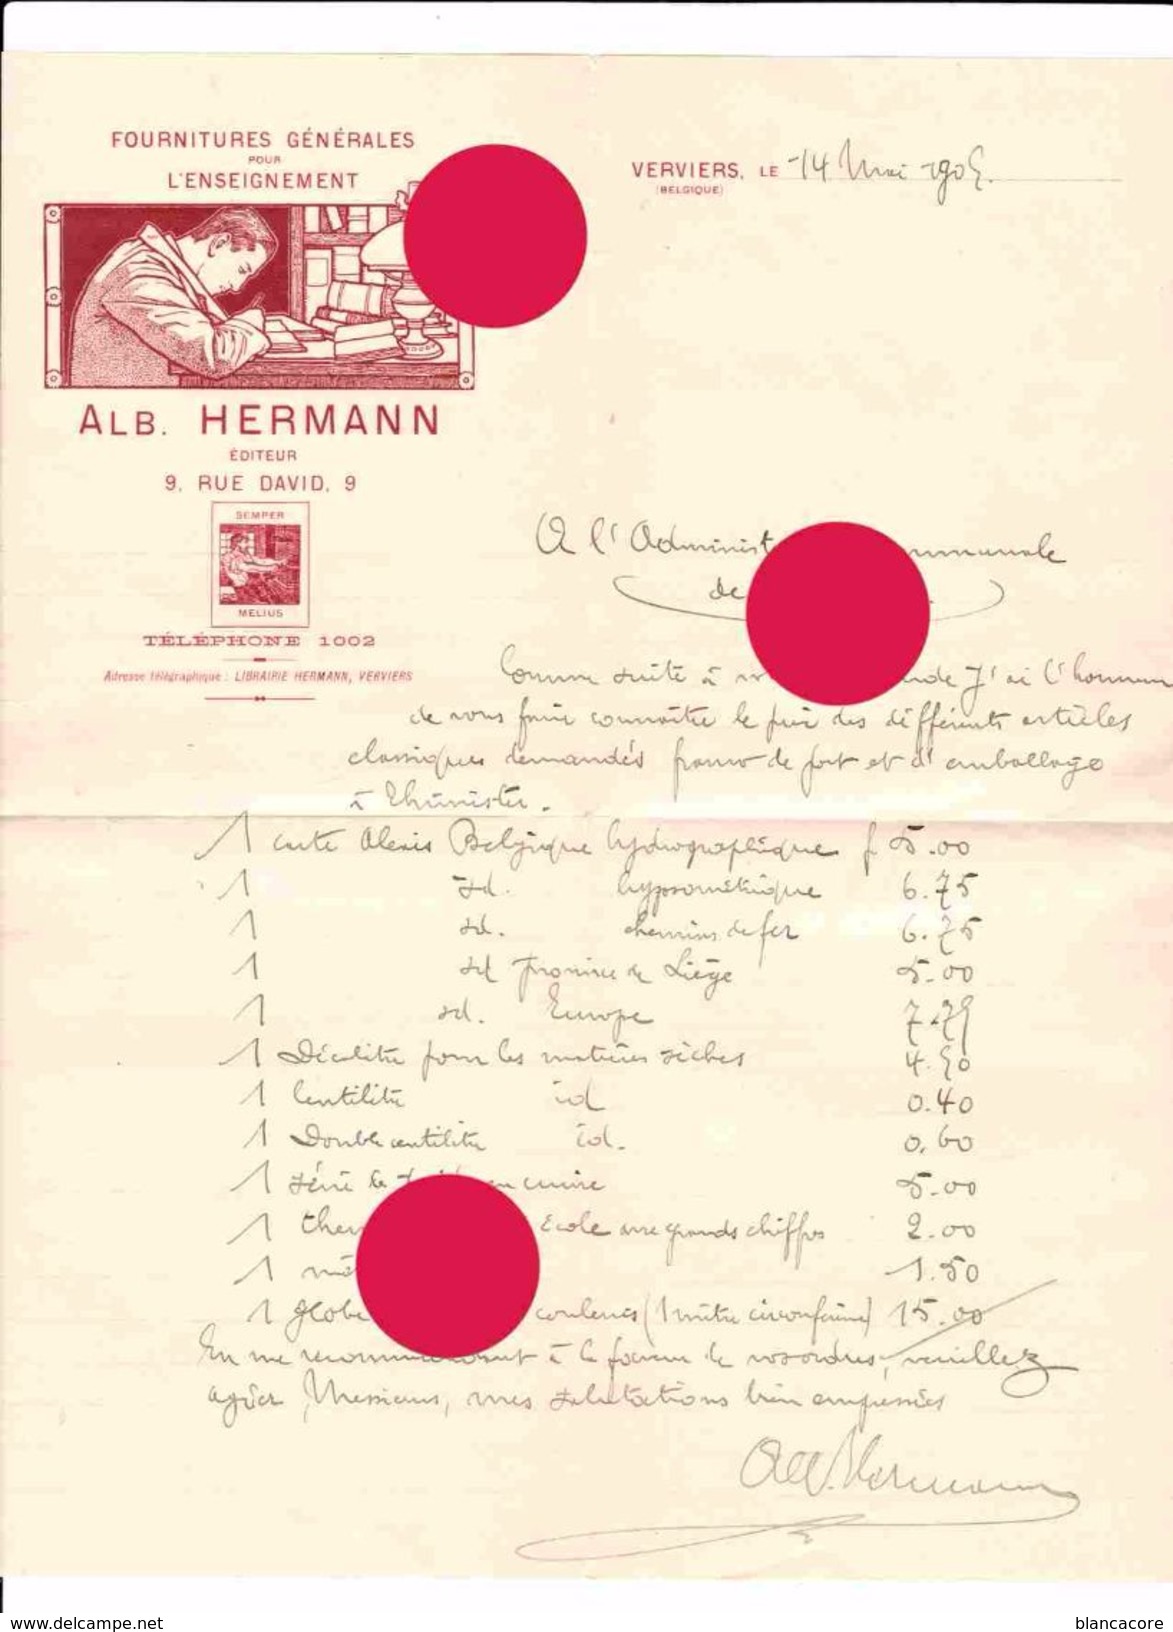 VERVIERS 1905 ALBERT HERMANN éditeur - Printing & Stationeries